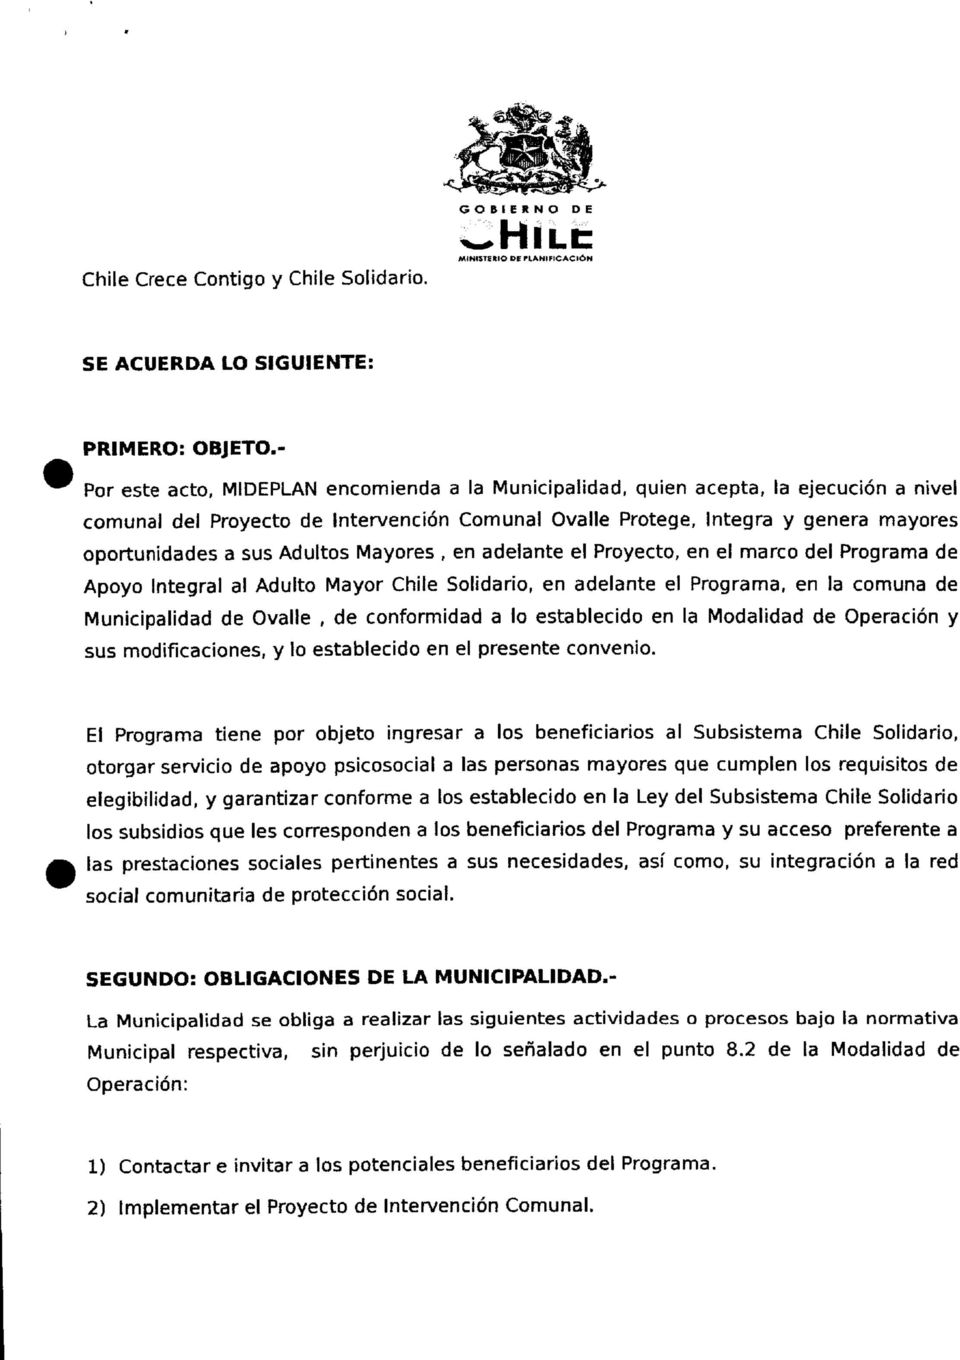 Adultos Mayores, en adelante el Proyecto, en el marco del Programa de Apoyo Integral al Adulto Mayor Chile Solidario, en adelante el Programa, en la comuna de Municipalidad de Ovalle, de conformidad